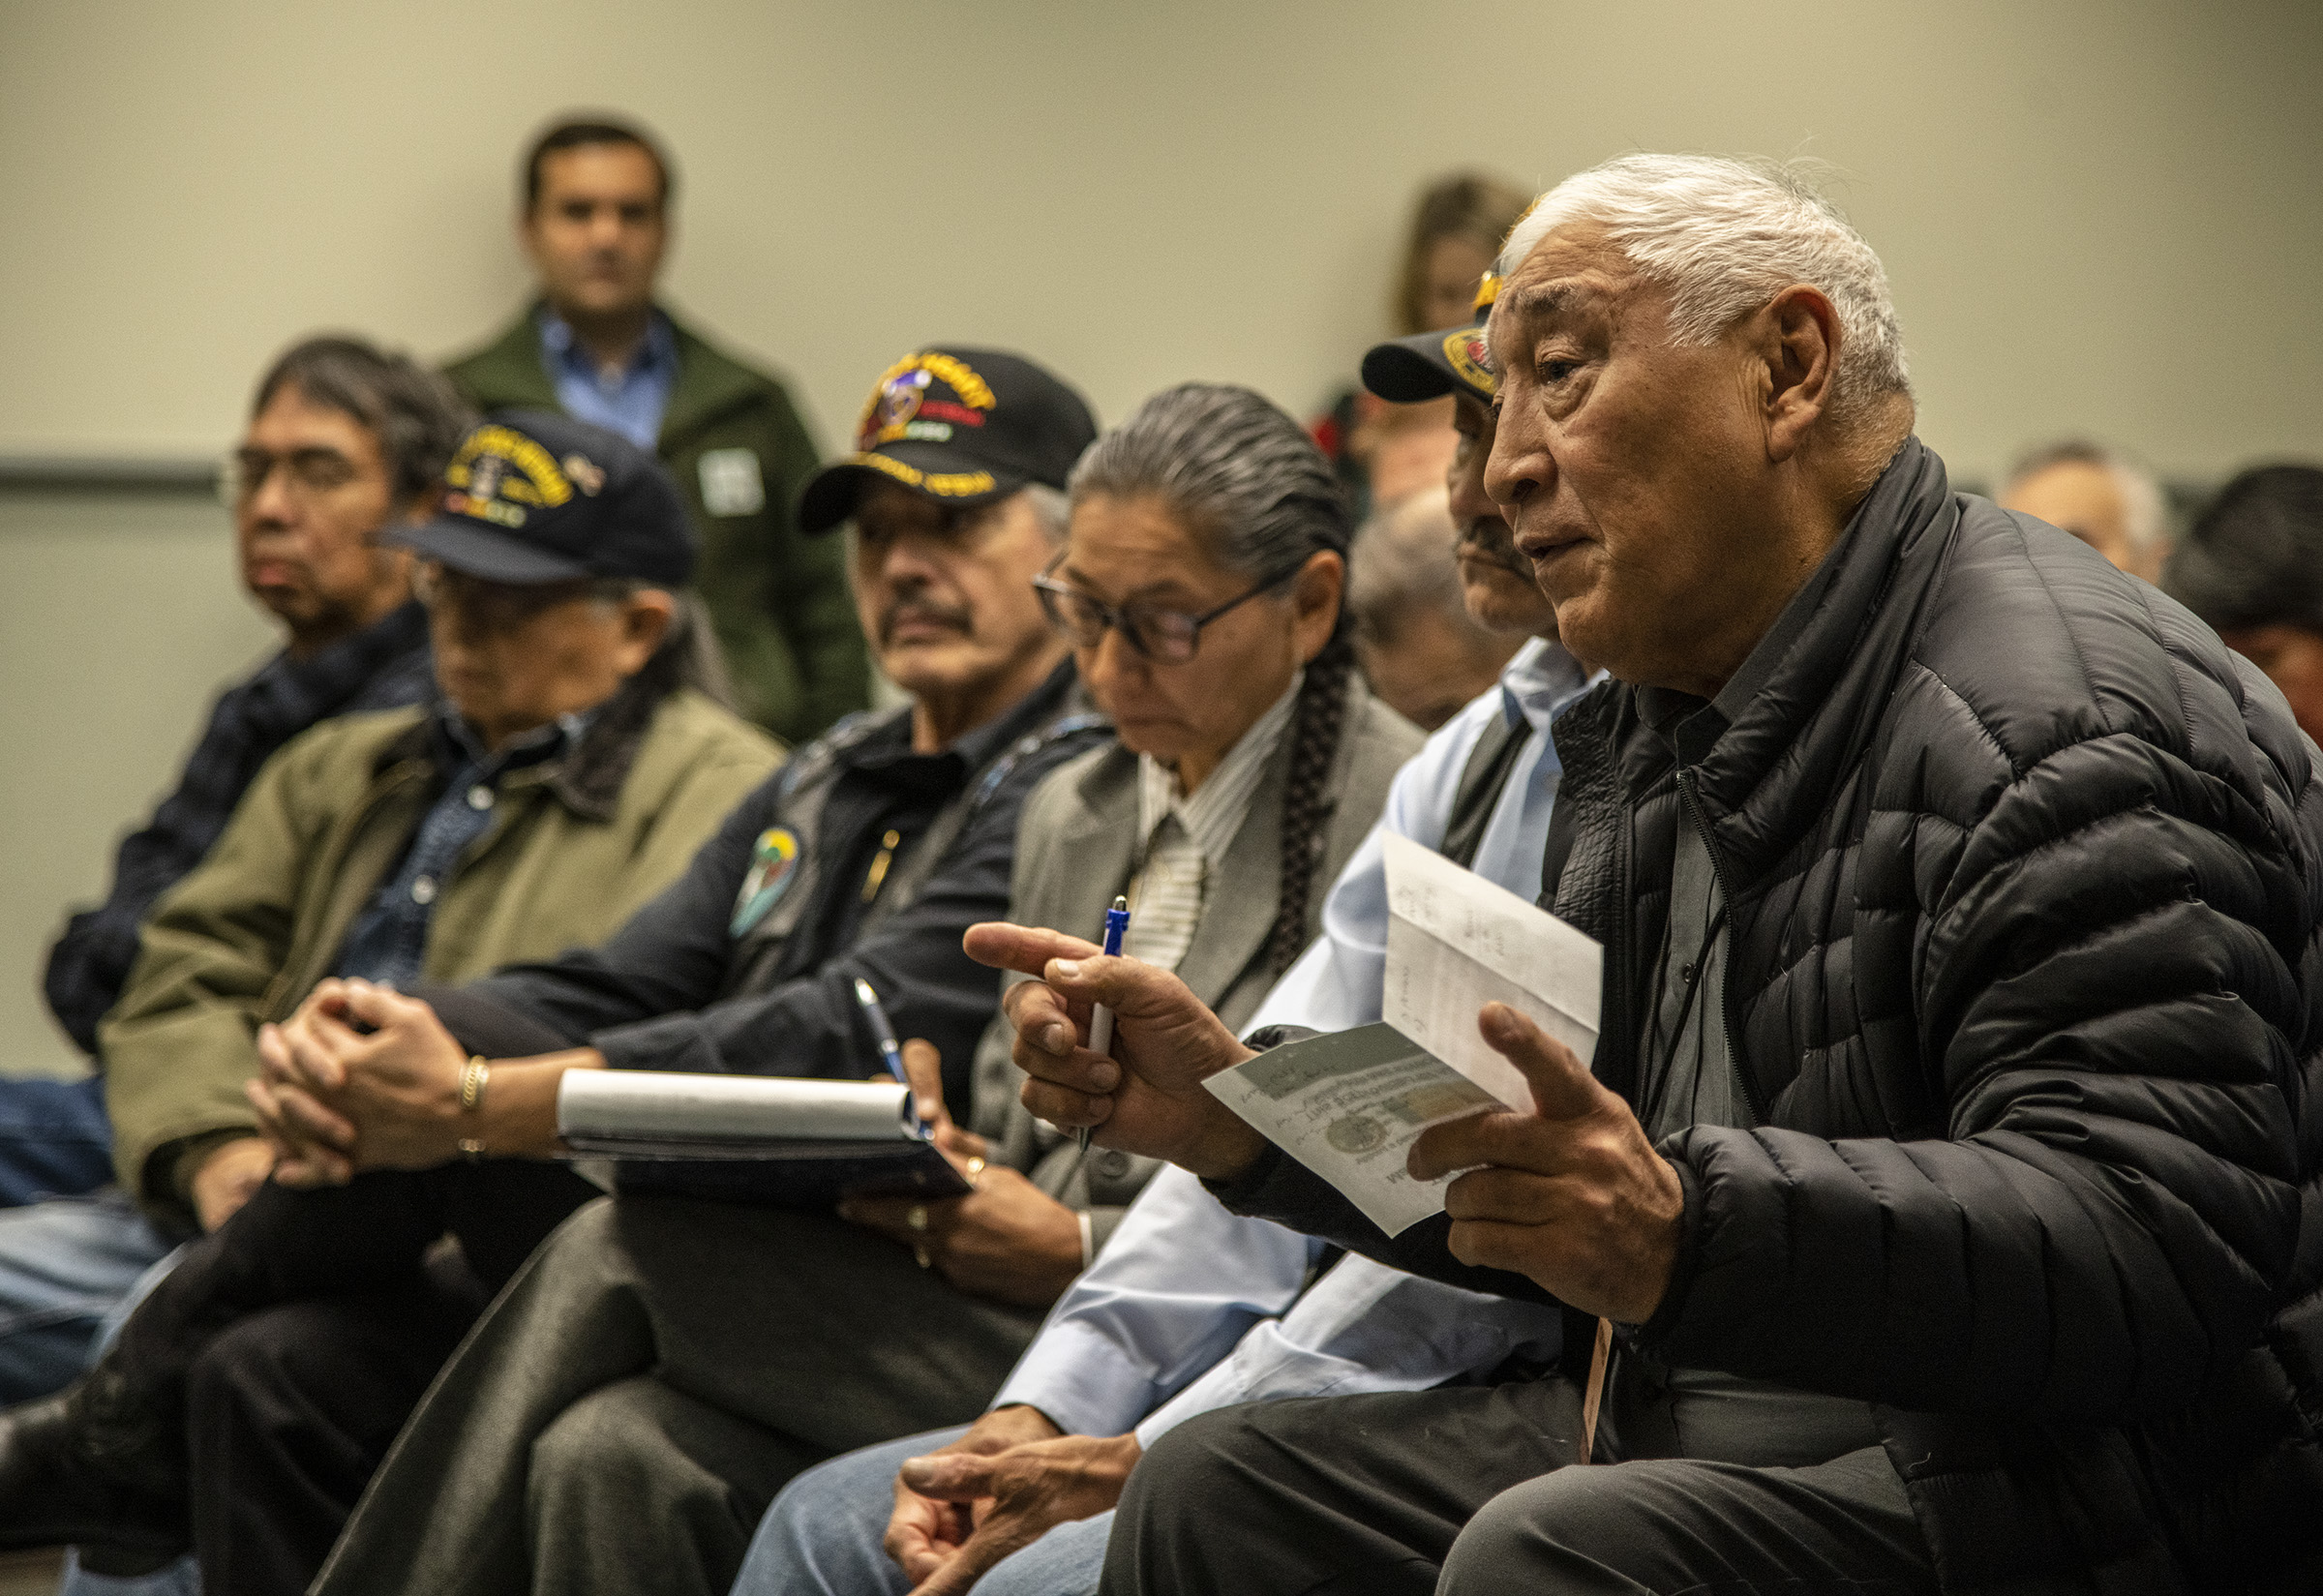 Alaska Veterans at presentation